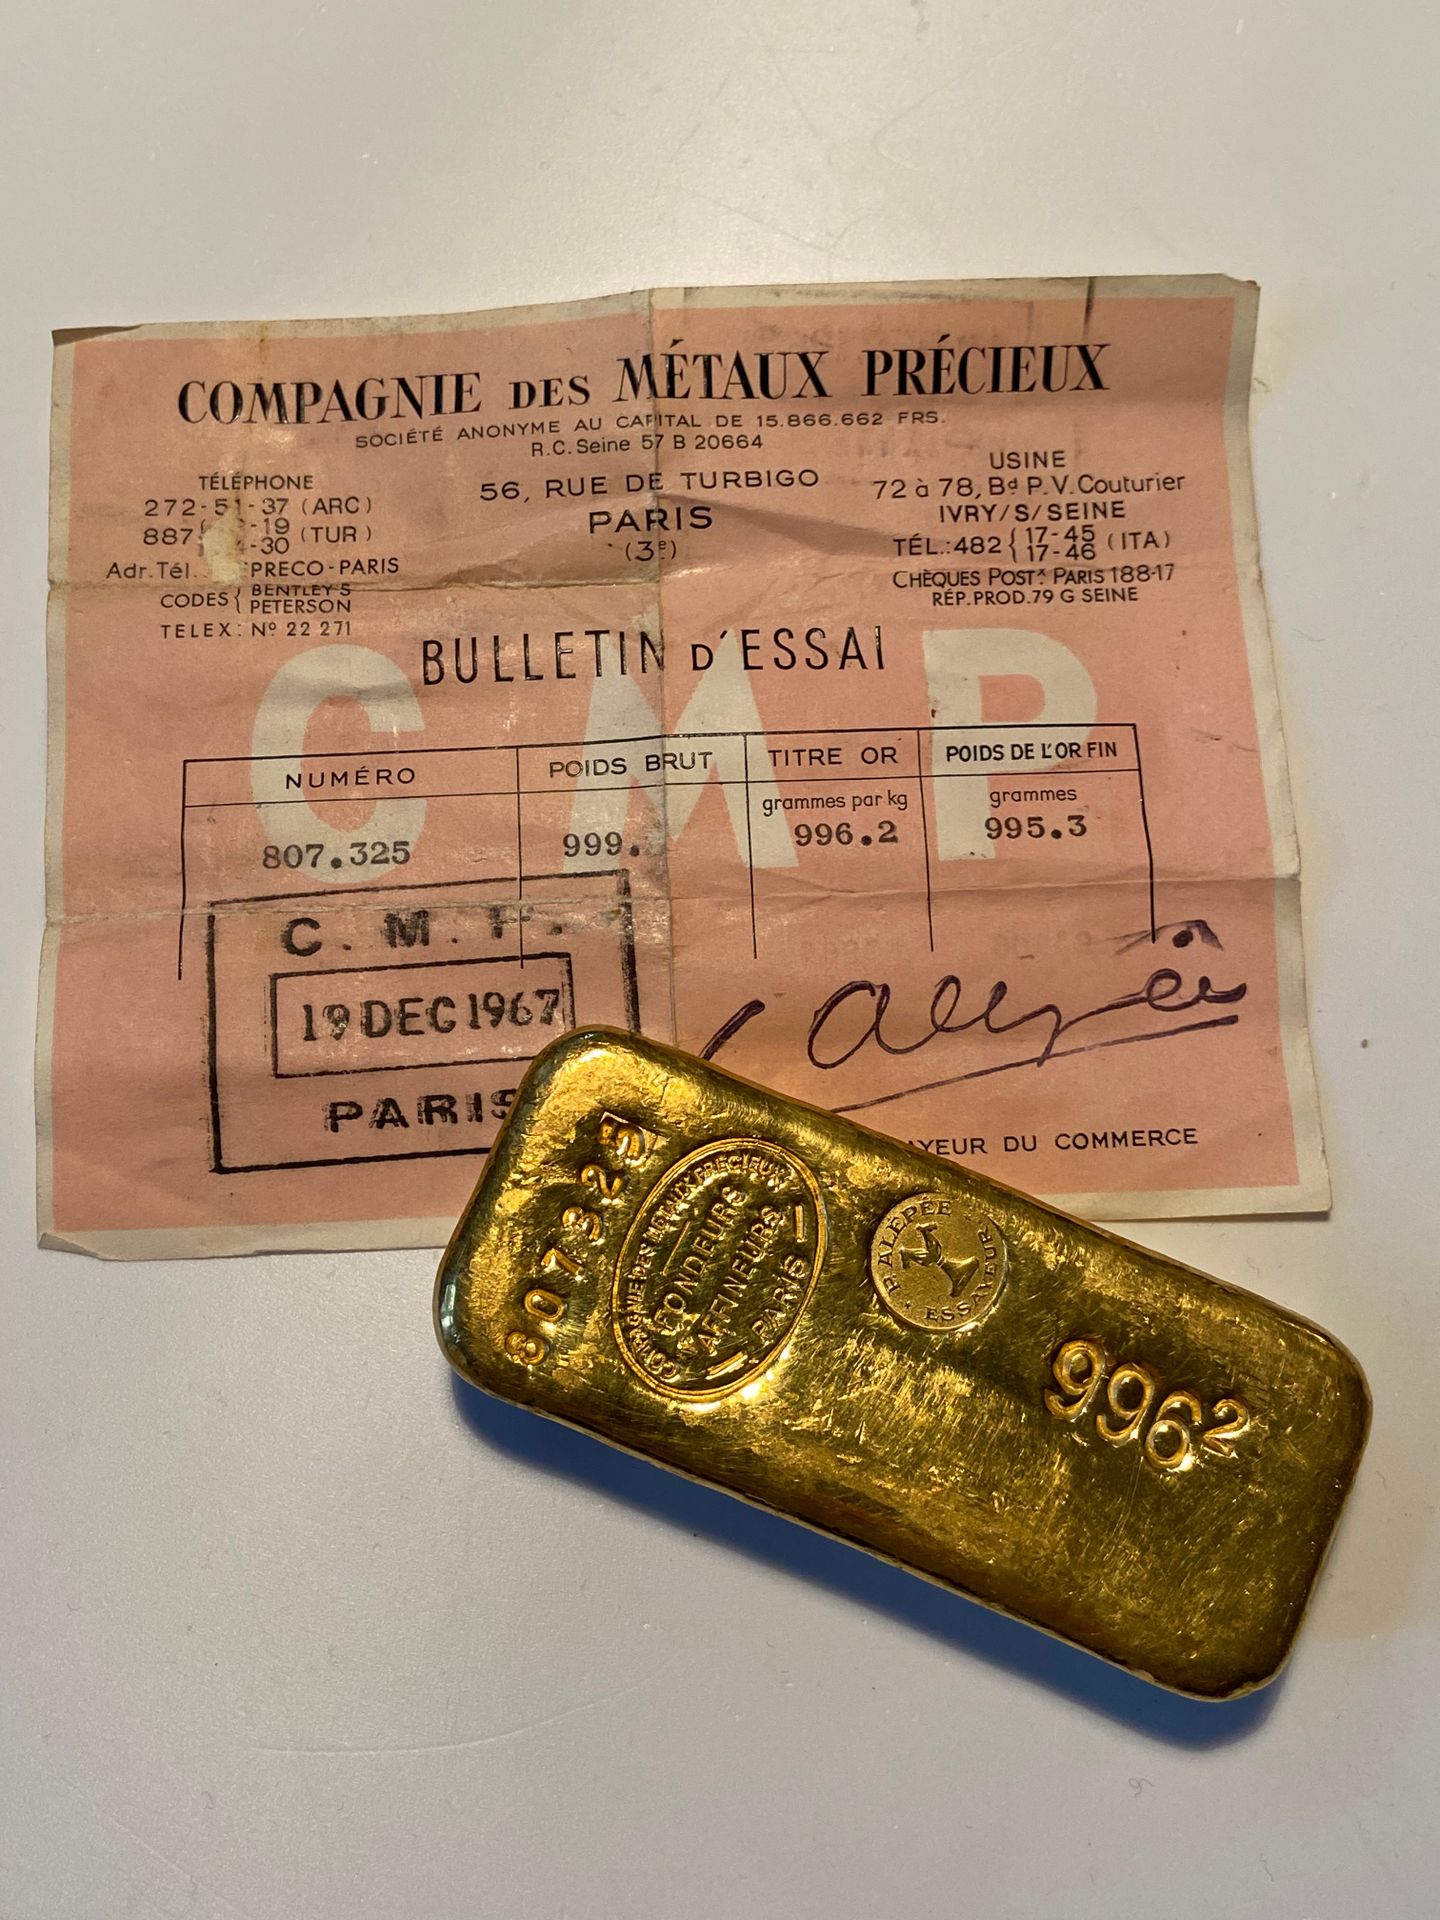 Null 
Un lingot d'or portant le numéro 807325, poids brut: 999 gr (chiffre après&hellip;